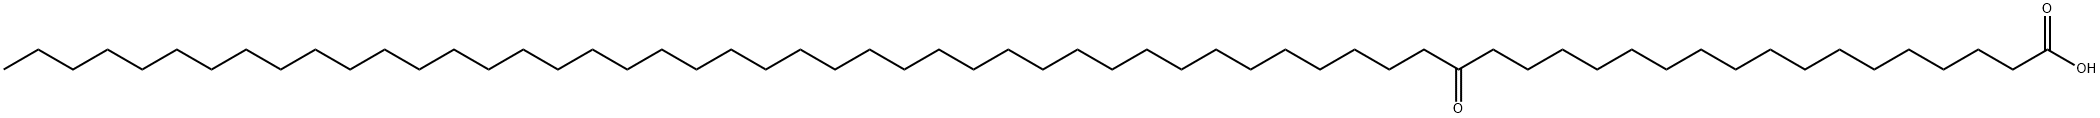 Hexacontanoic acid, 18-oxo-|